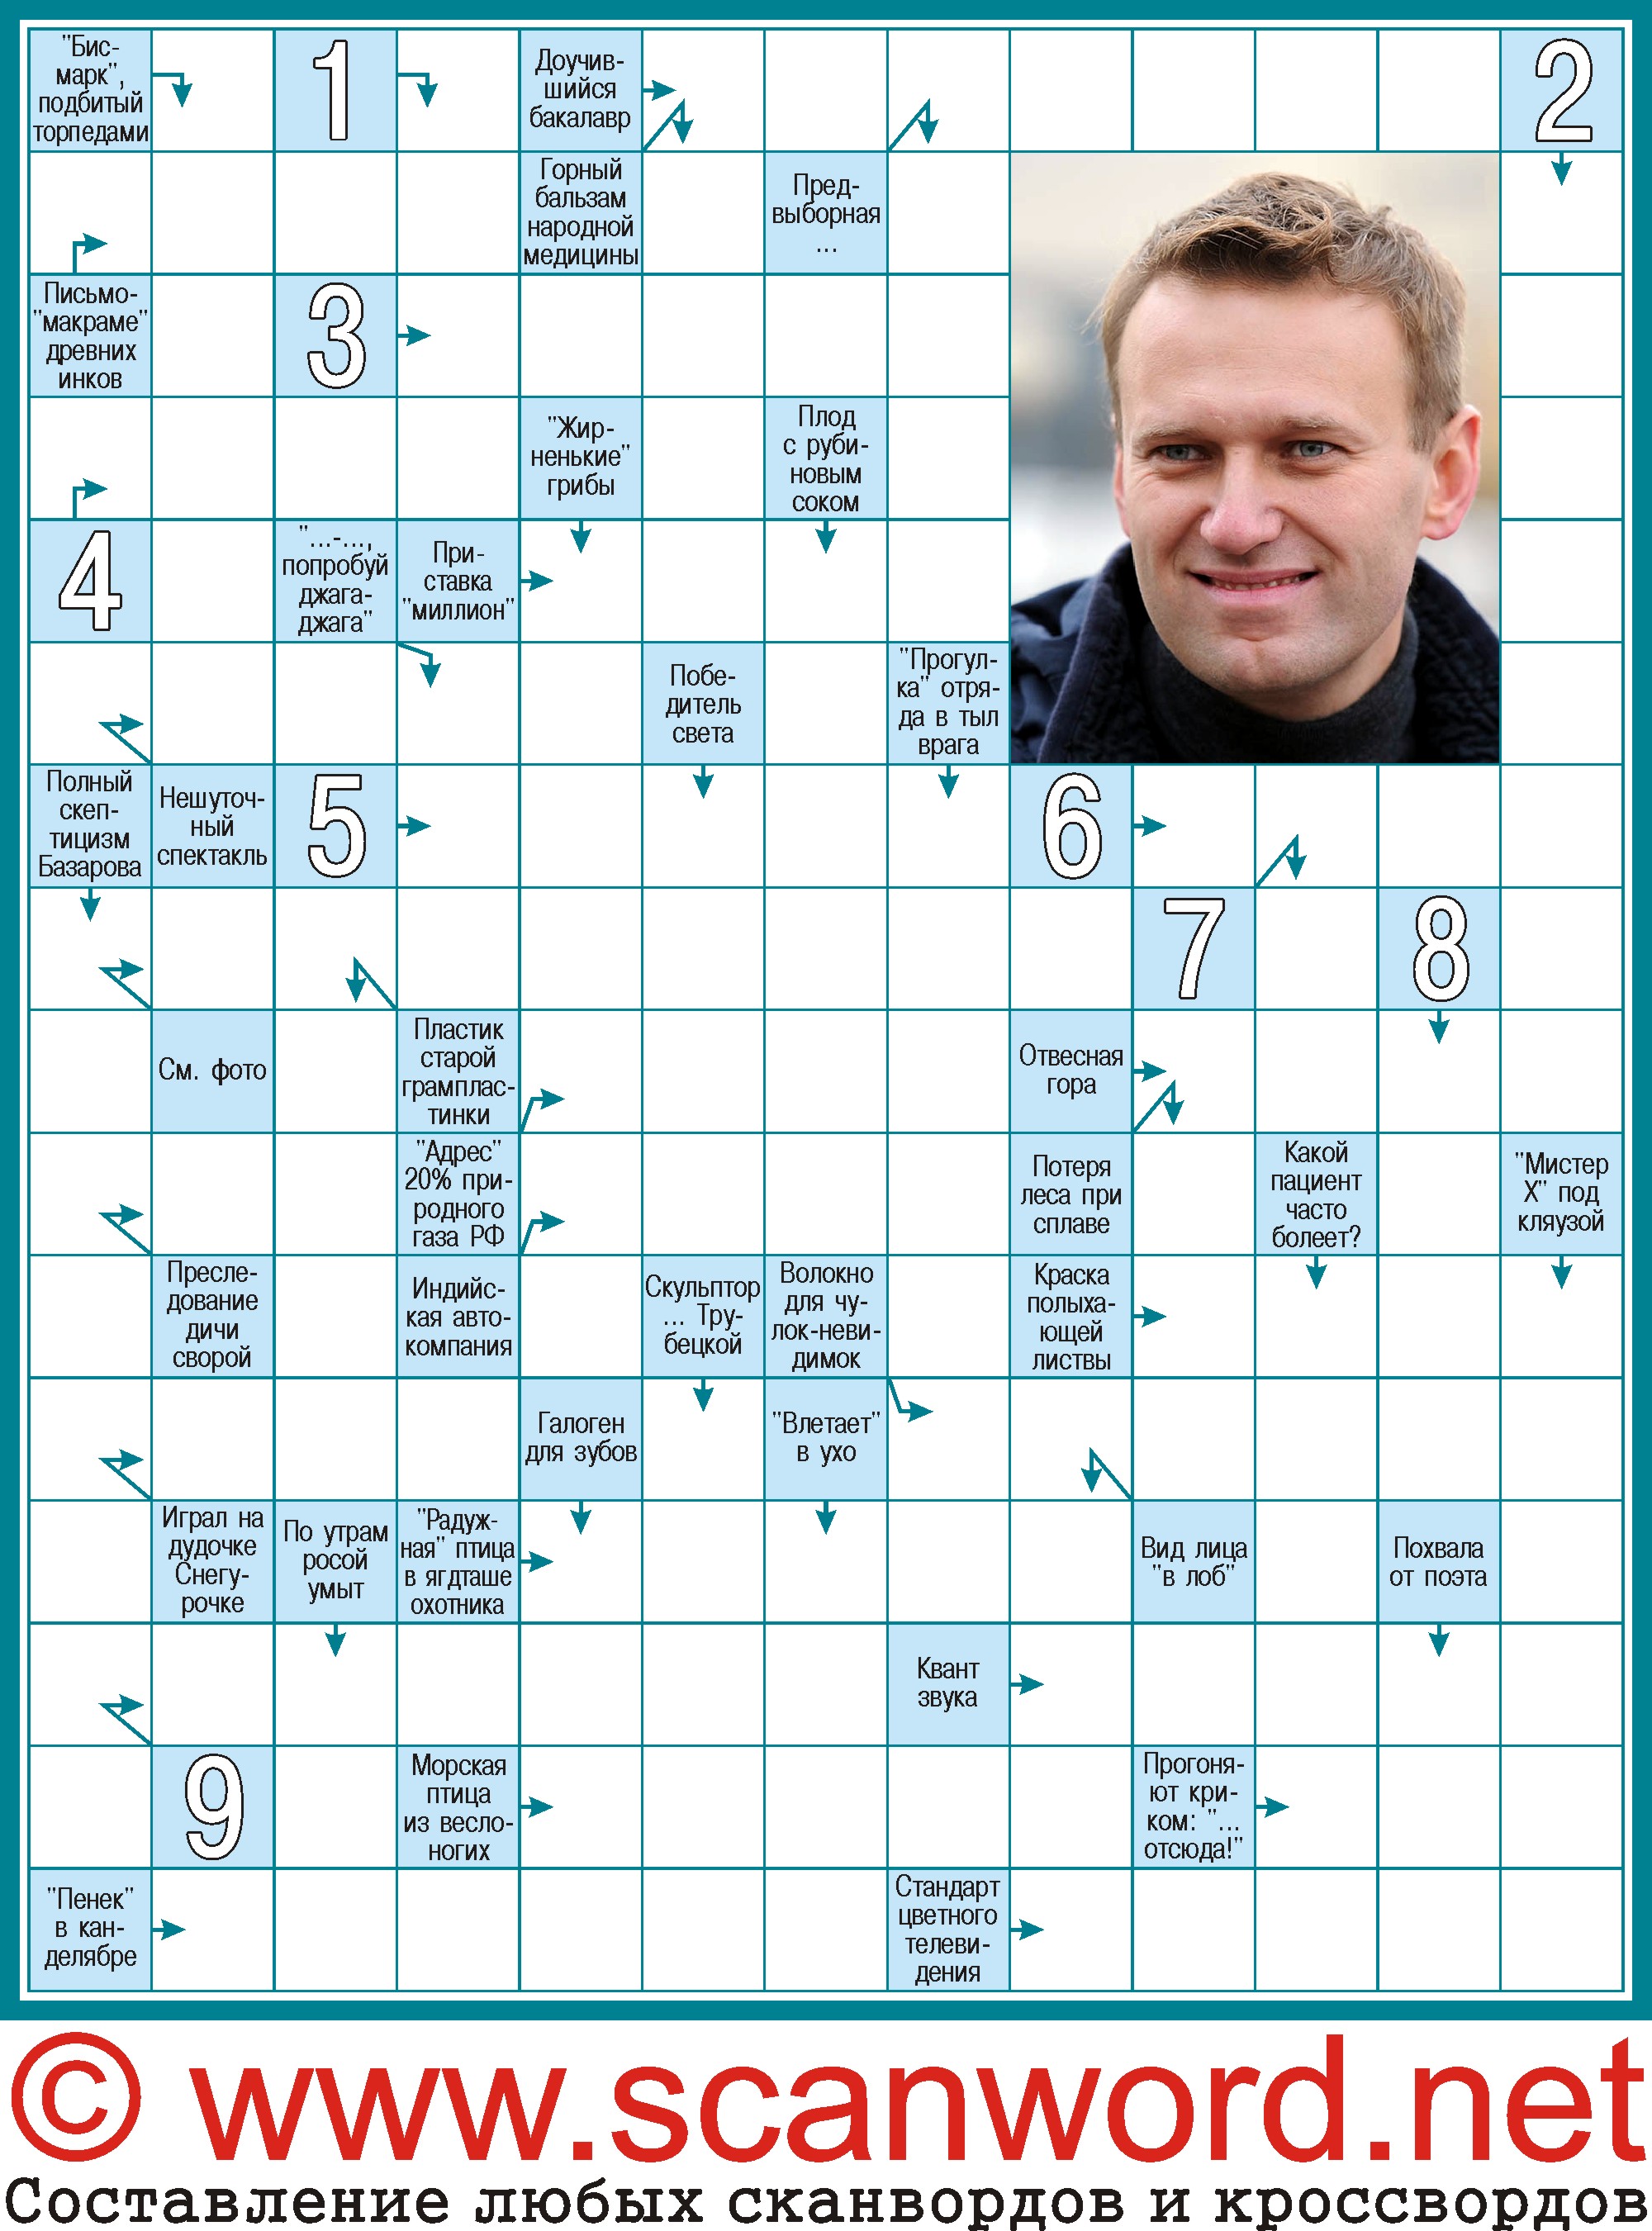 Сканворд Алексей Навальный